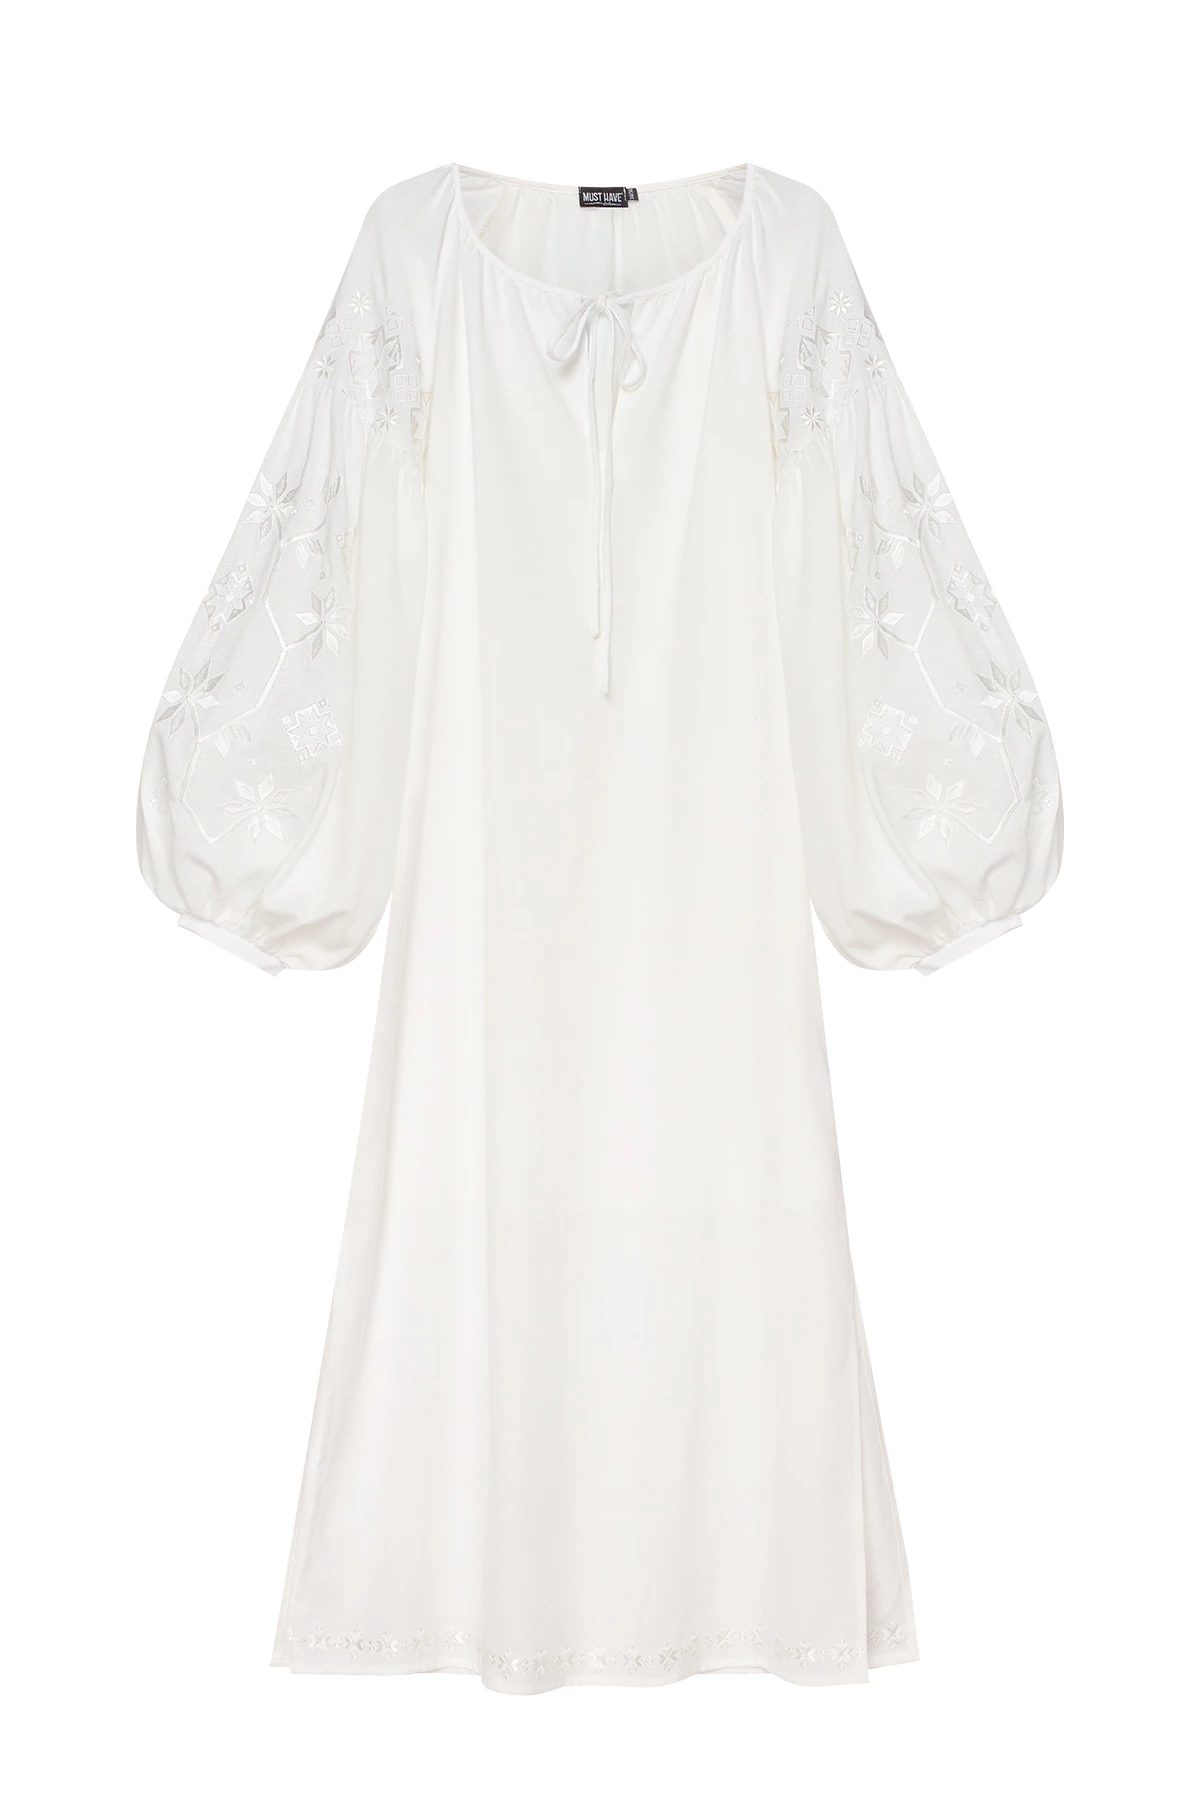 Молочна вишита сукня "білим по білому" з льоном, фото 6